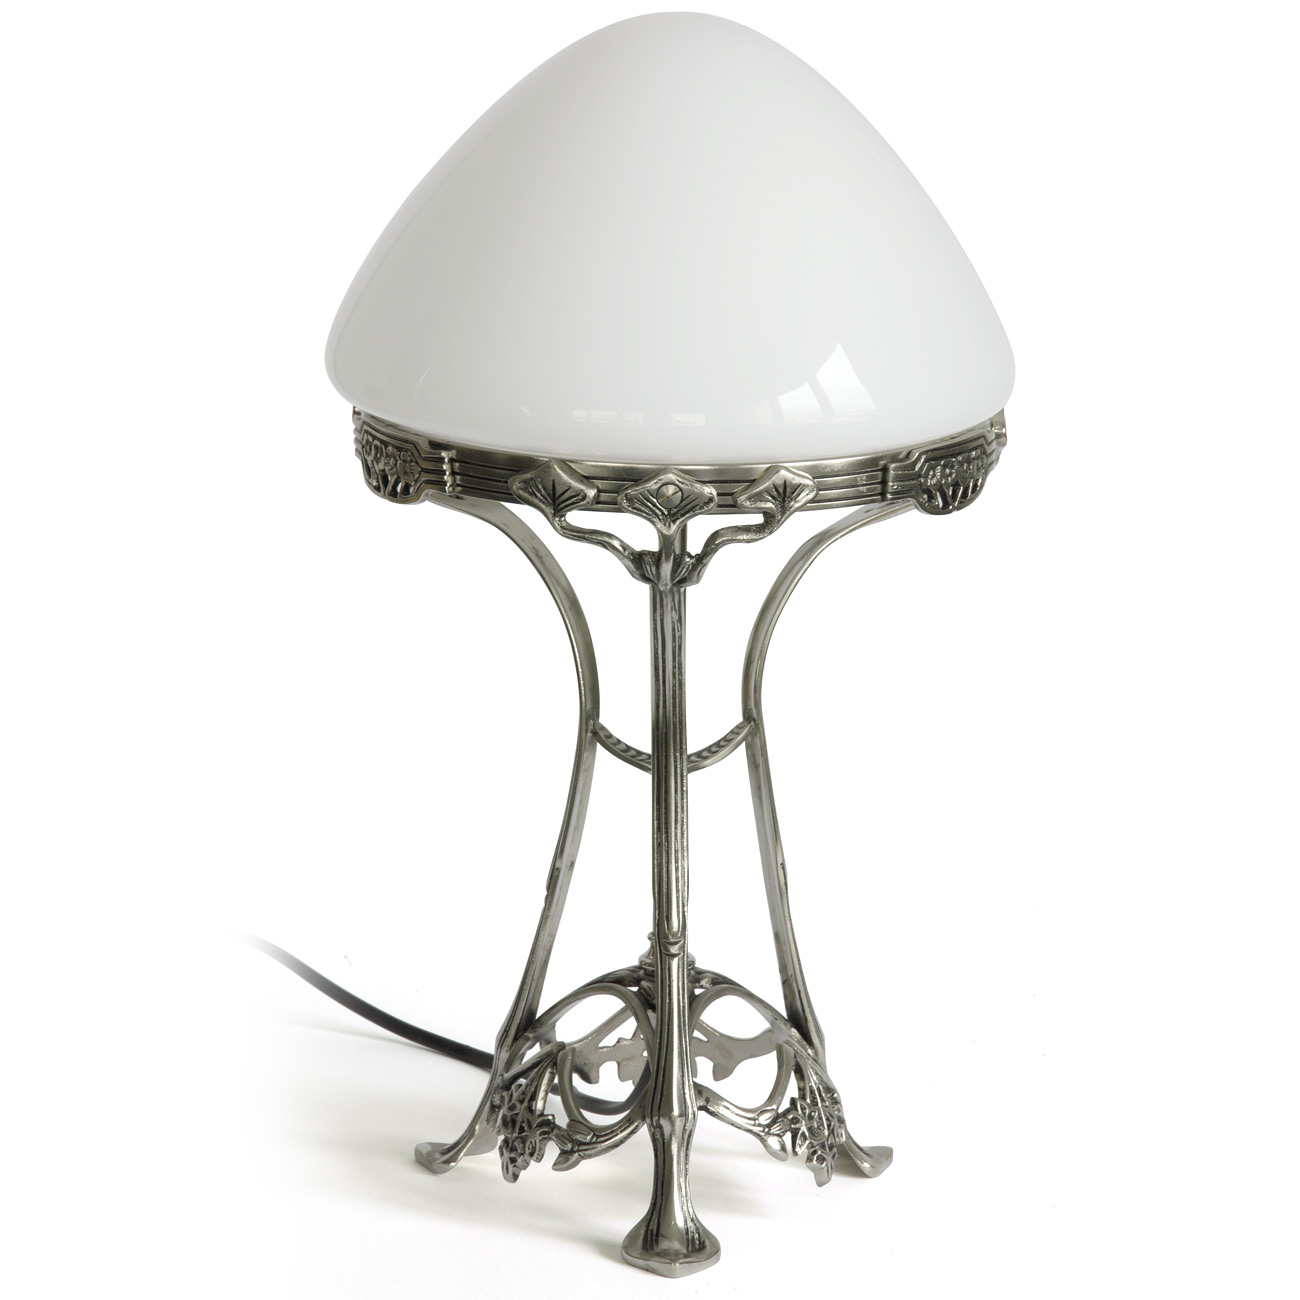 Art nouveau-Pilz-Tischleuchte mit Opalglas-Schirm: Die Art nouveau (Jugendstil)-Tischleuchte mit Pilz-Glasschirm (hier Messing glänzend vernickelt)